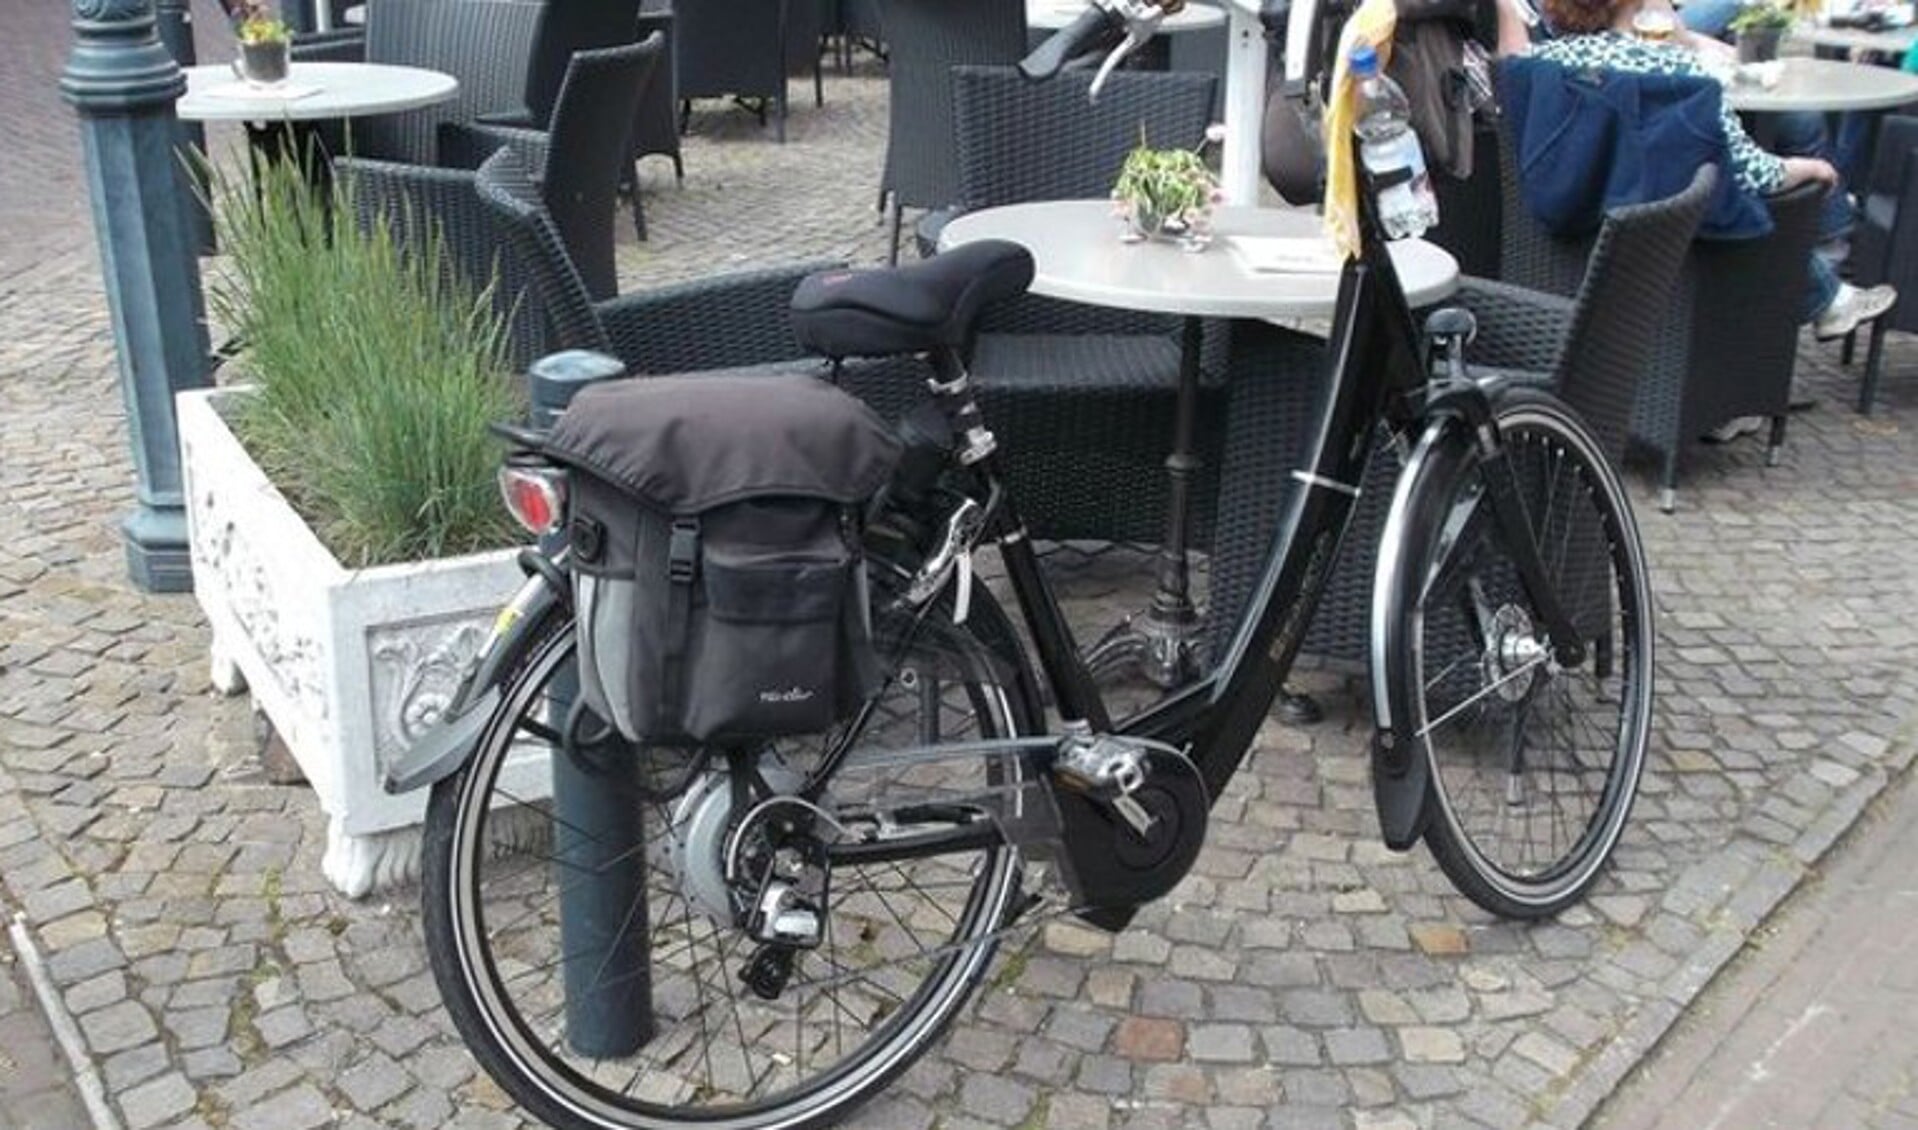 De fiets van de vermiste Herman Philipsen. Foto: politie.